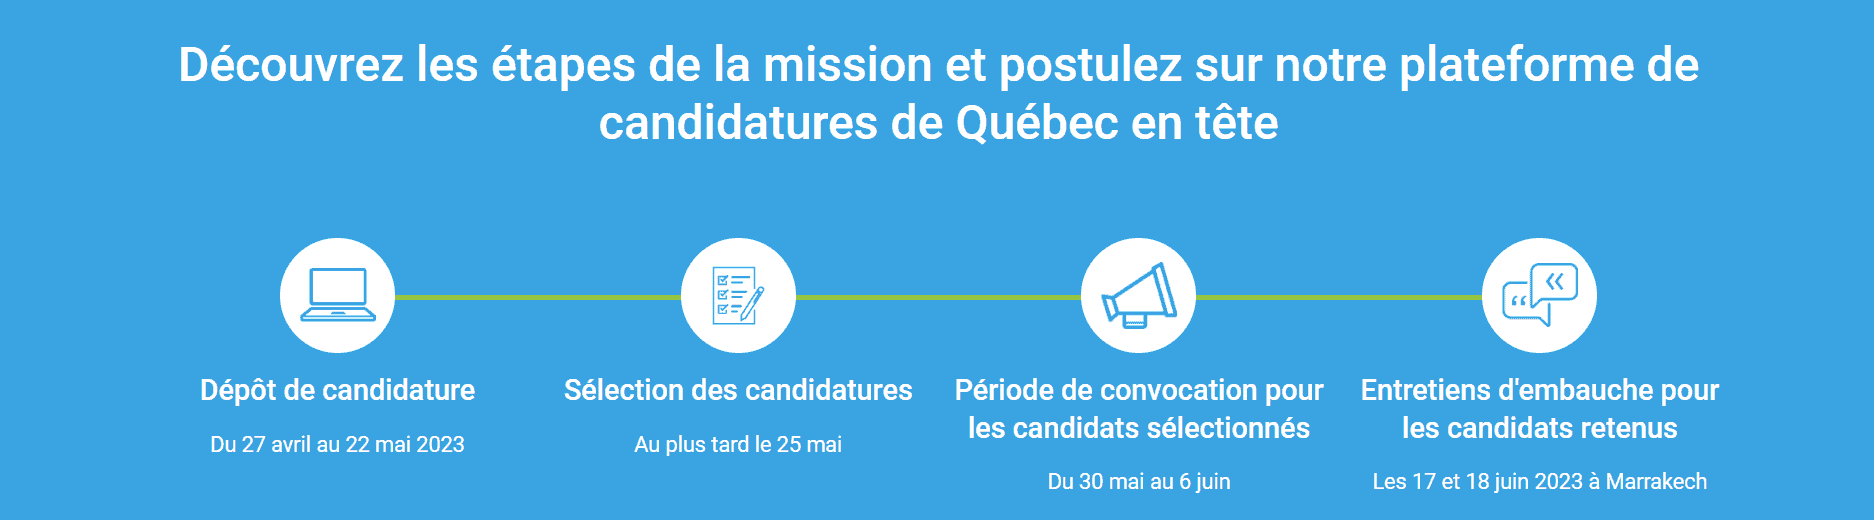 Etapes Québec en Tête Maroc 2023